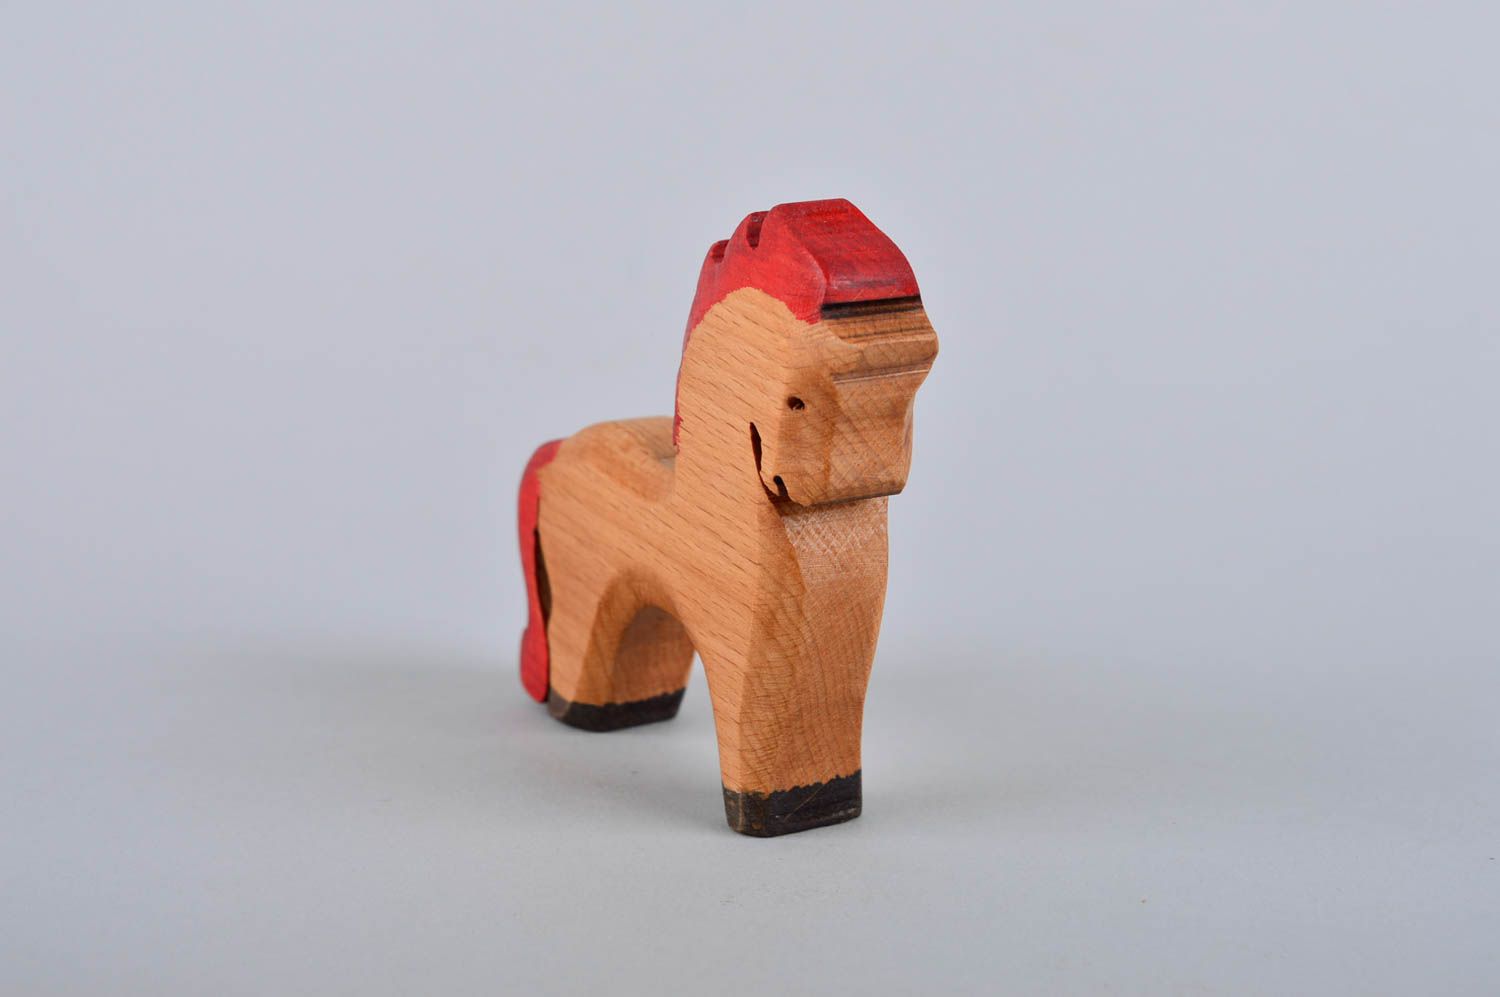 Игрушка для детей игрушка ручной работы игрушка лошадка деревянная маленькая фото 3